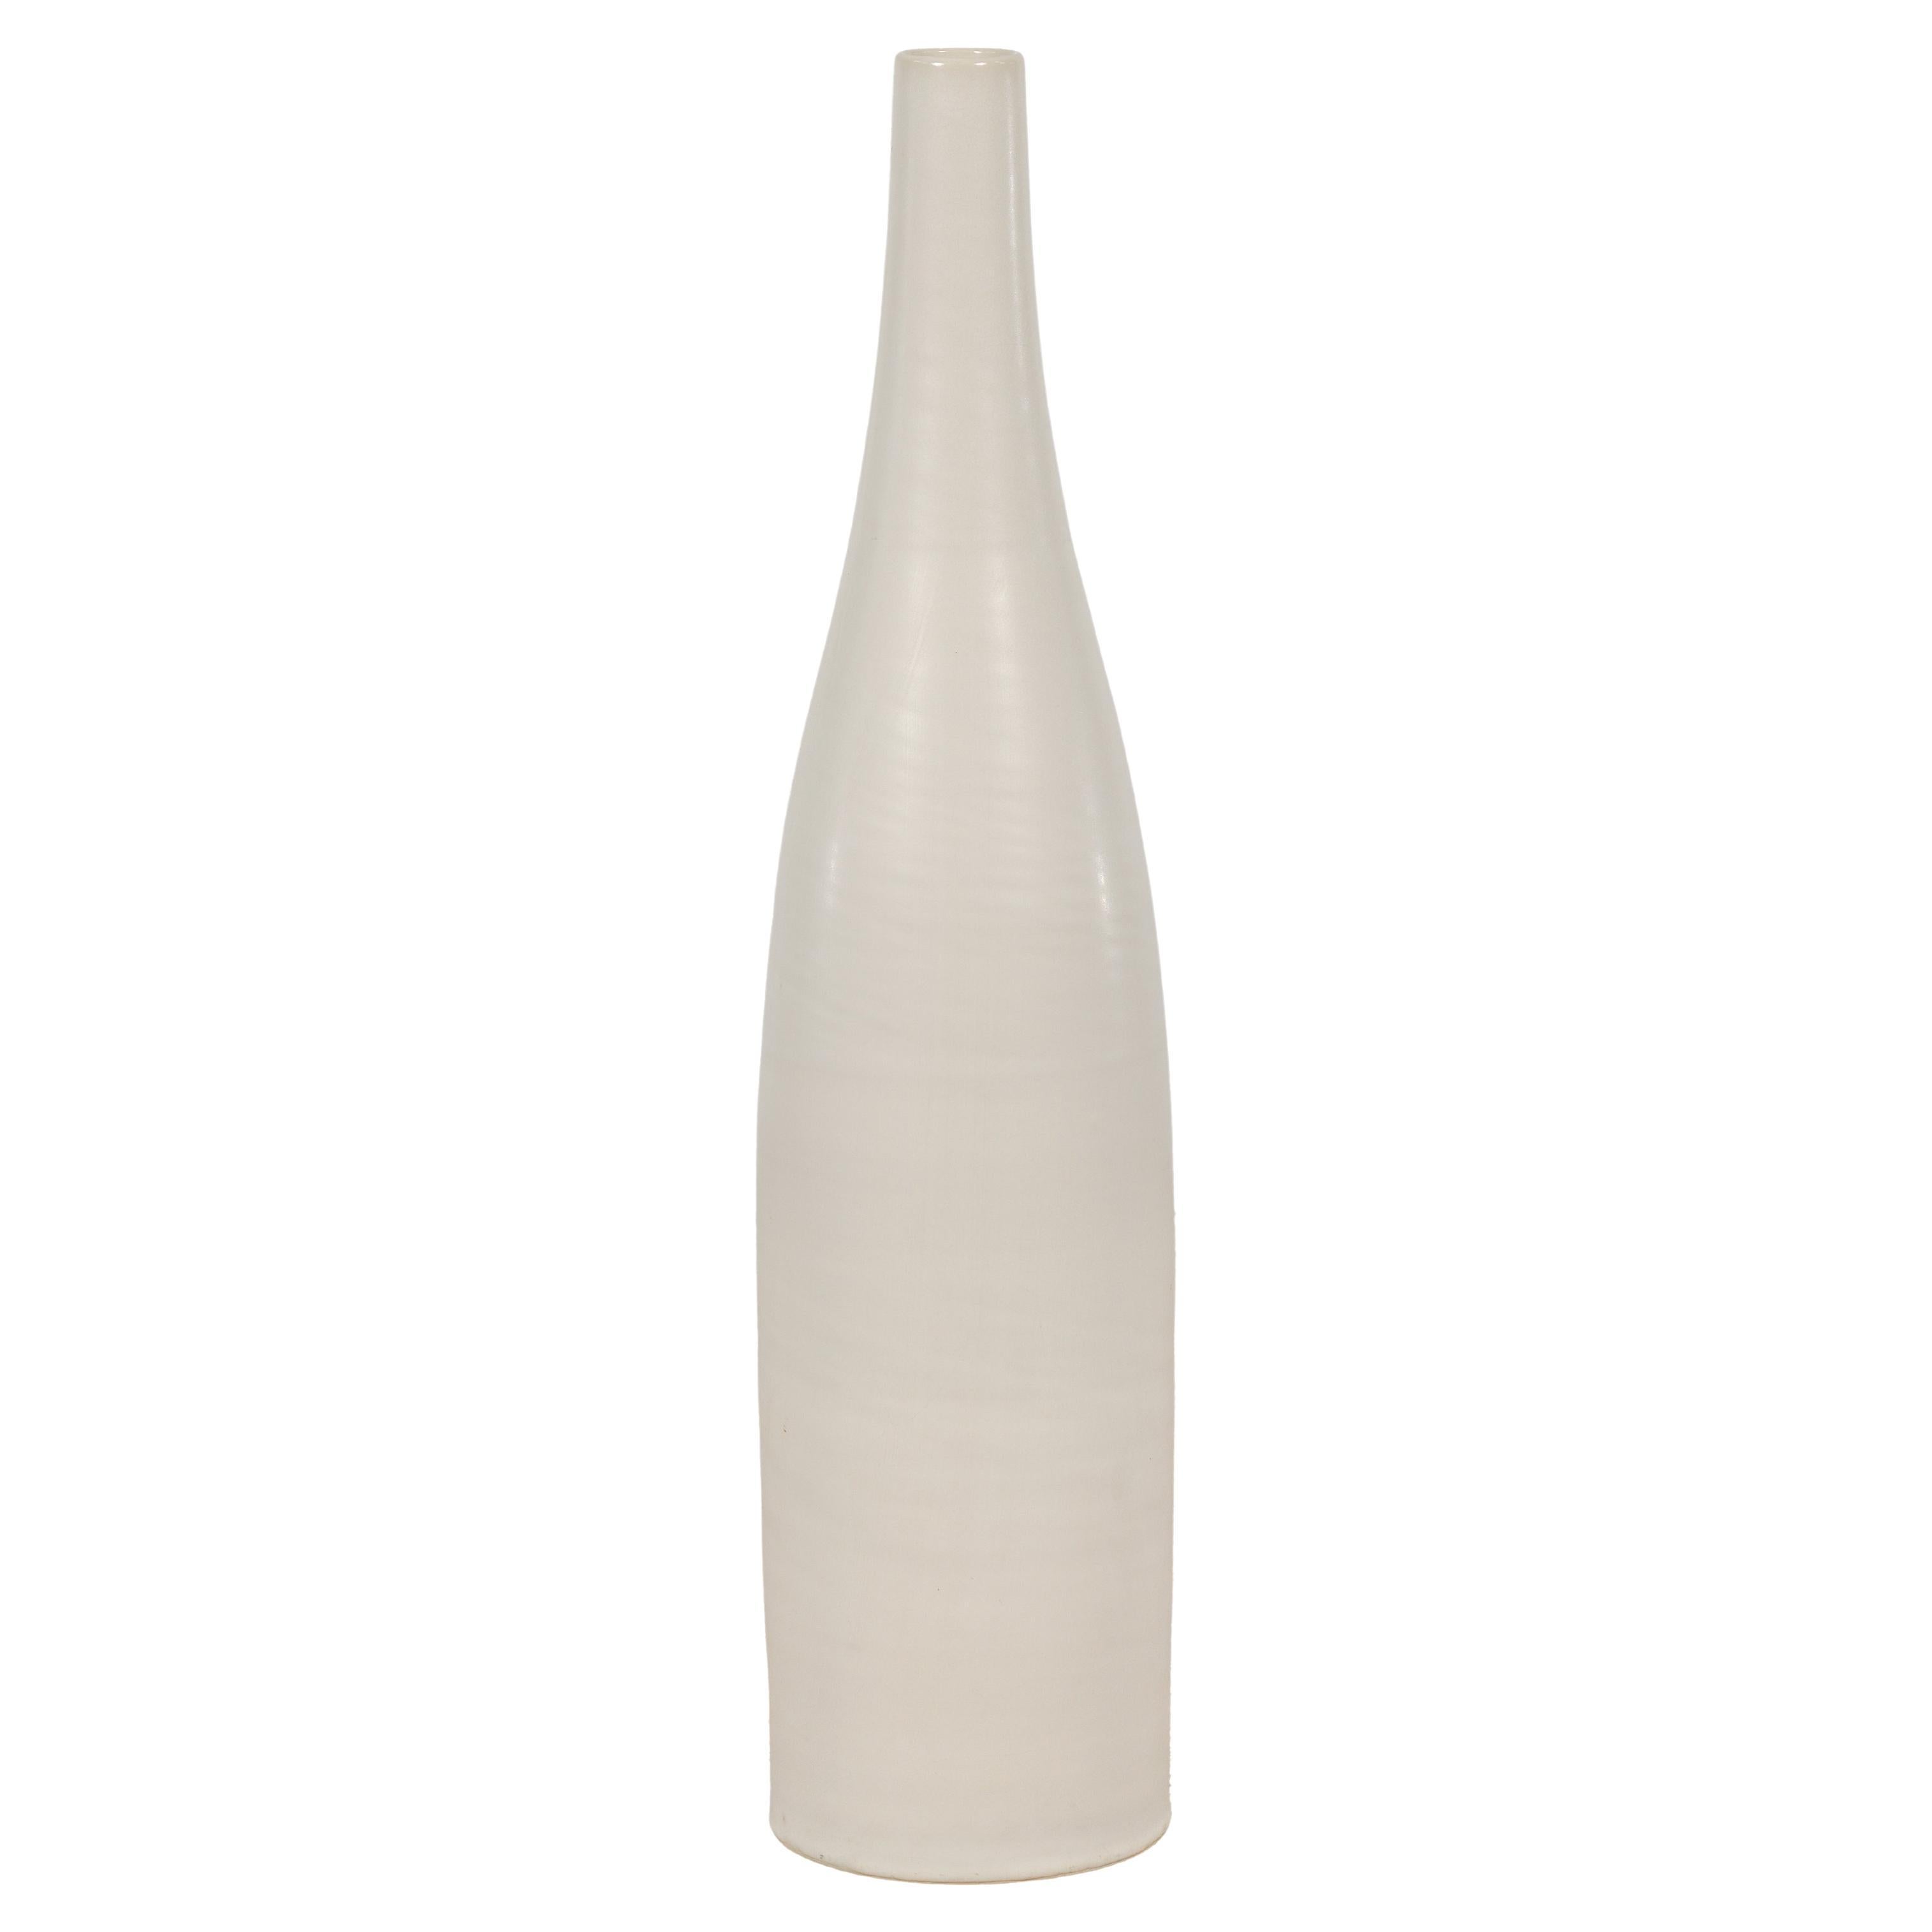 Grand vase contemporain fait à la main avec glaçure crème et silhouette élancée en vente